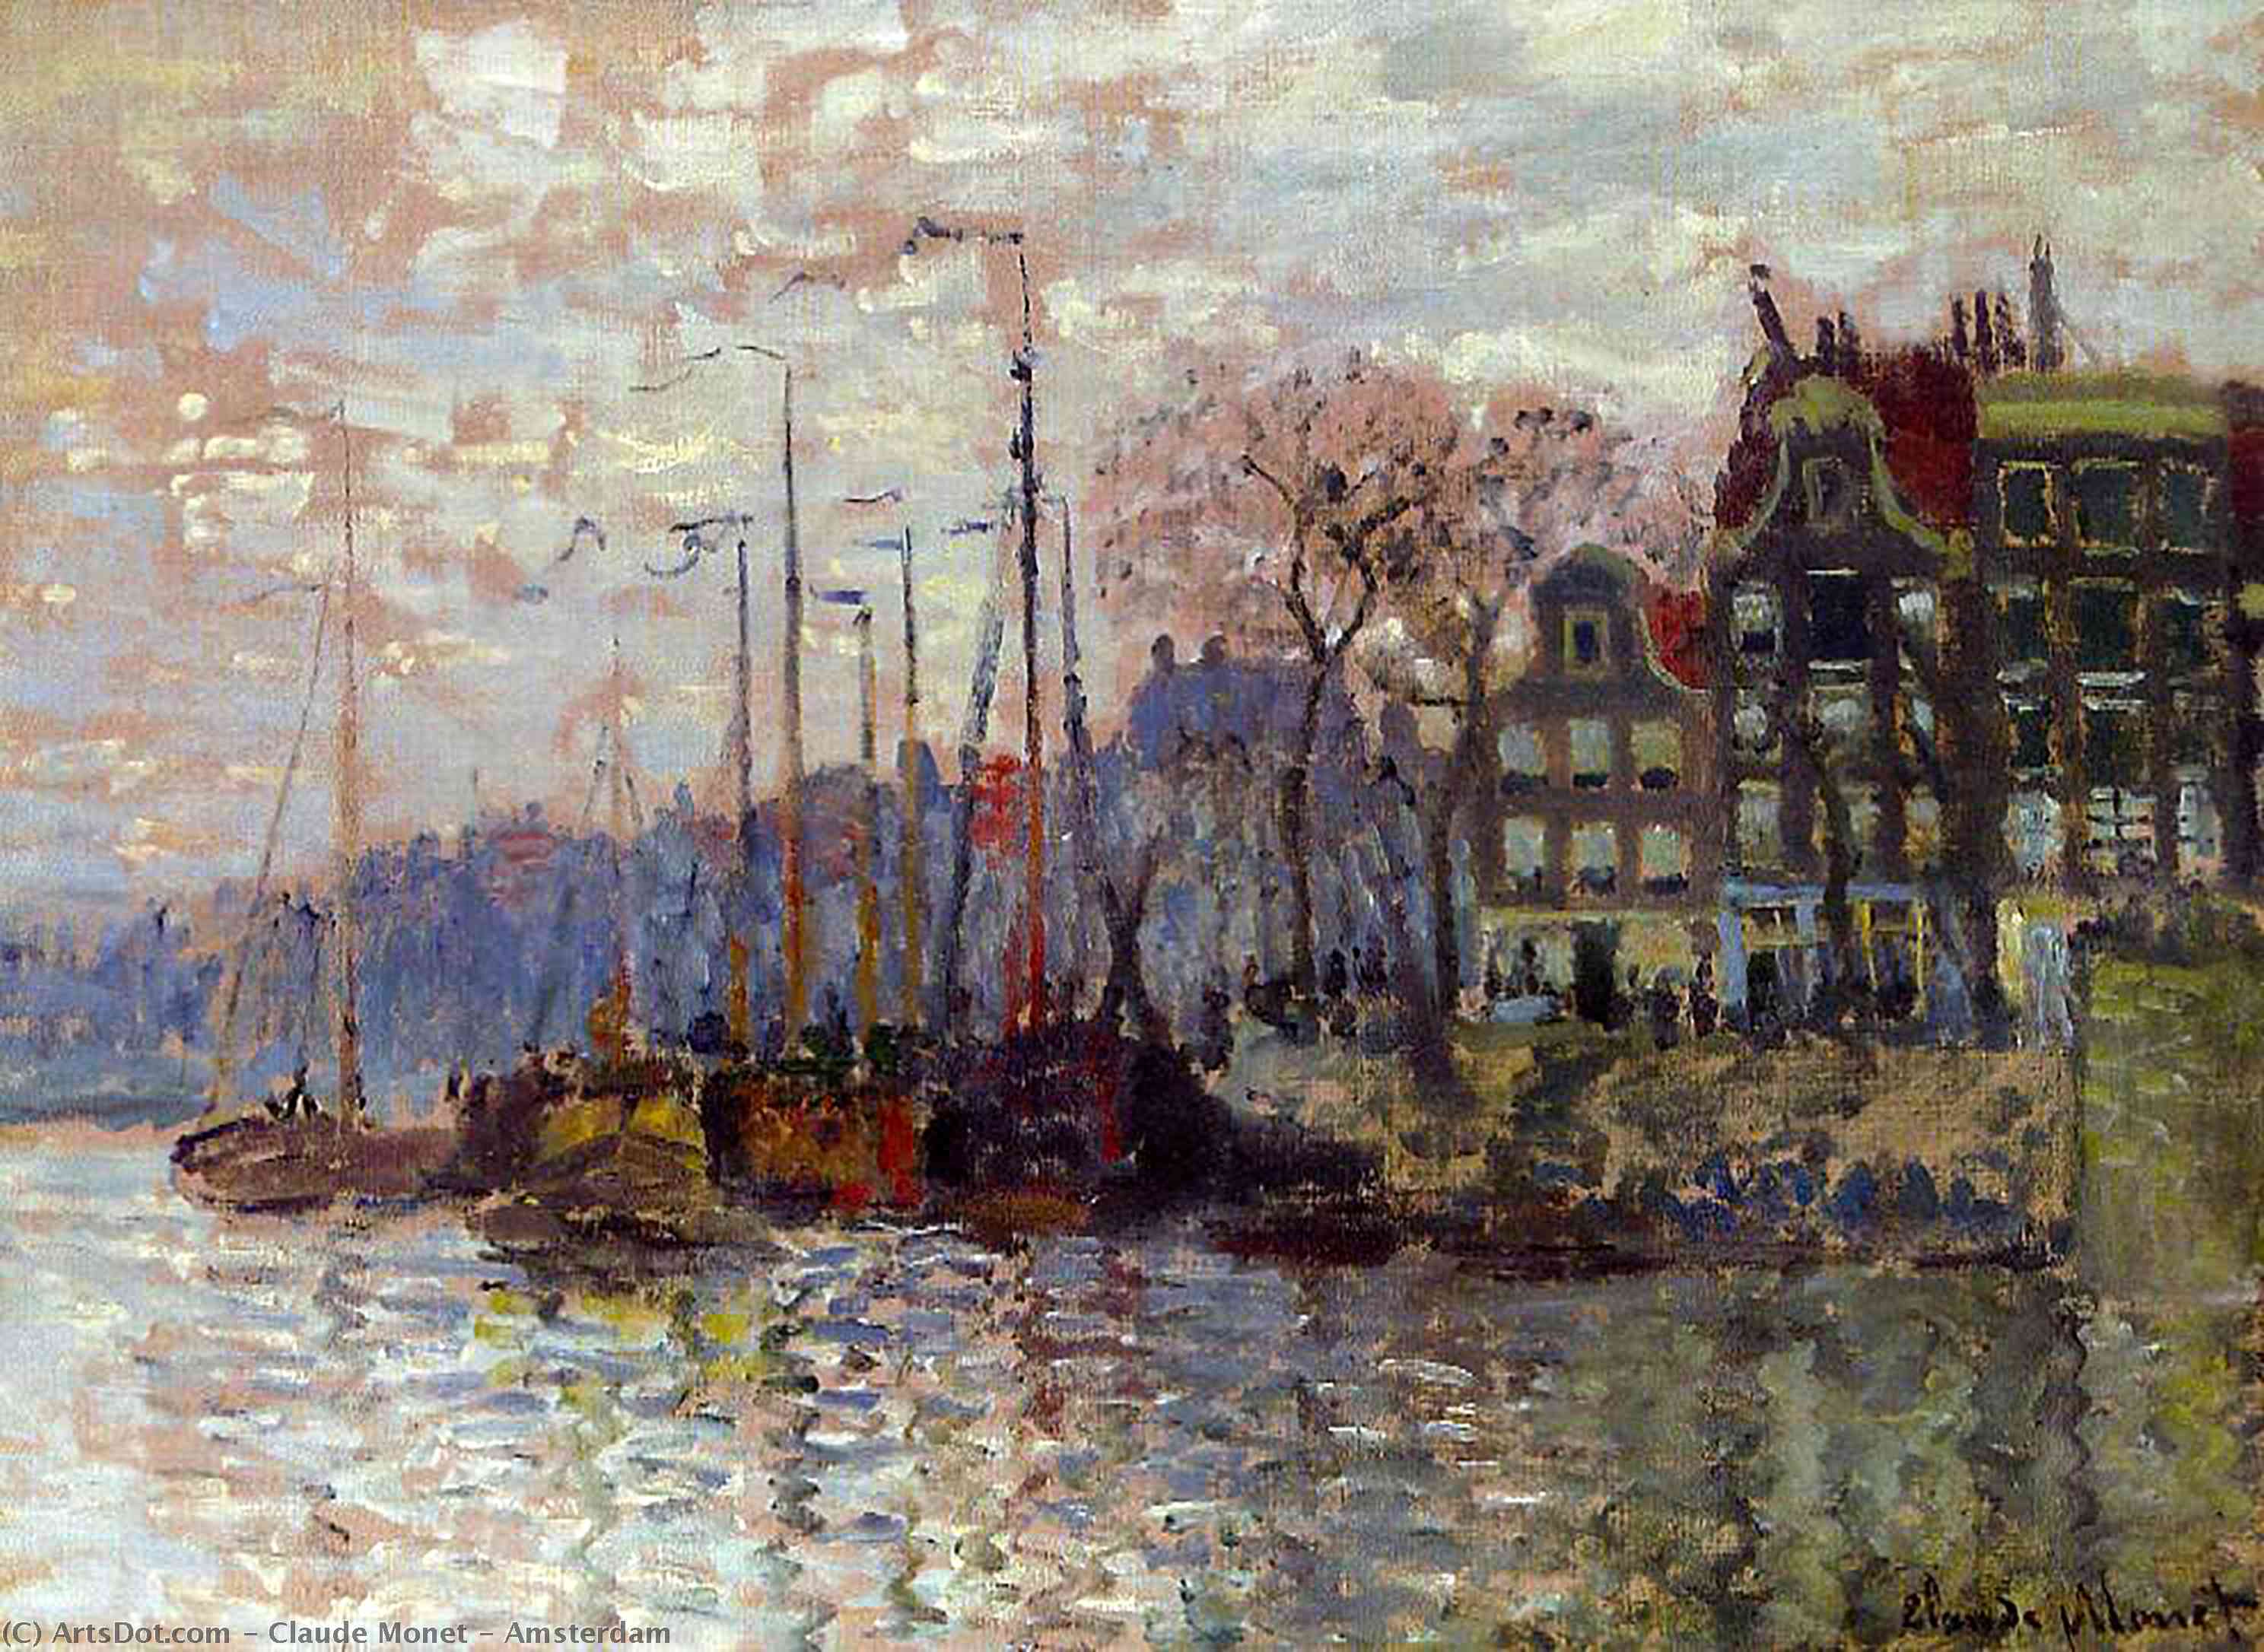 WikiOO.org - Εγκυκλοπαίδεια Καλών Τεχνών - Ζωγραφική, έργα τέχνης Claude Monet - Amsterdam